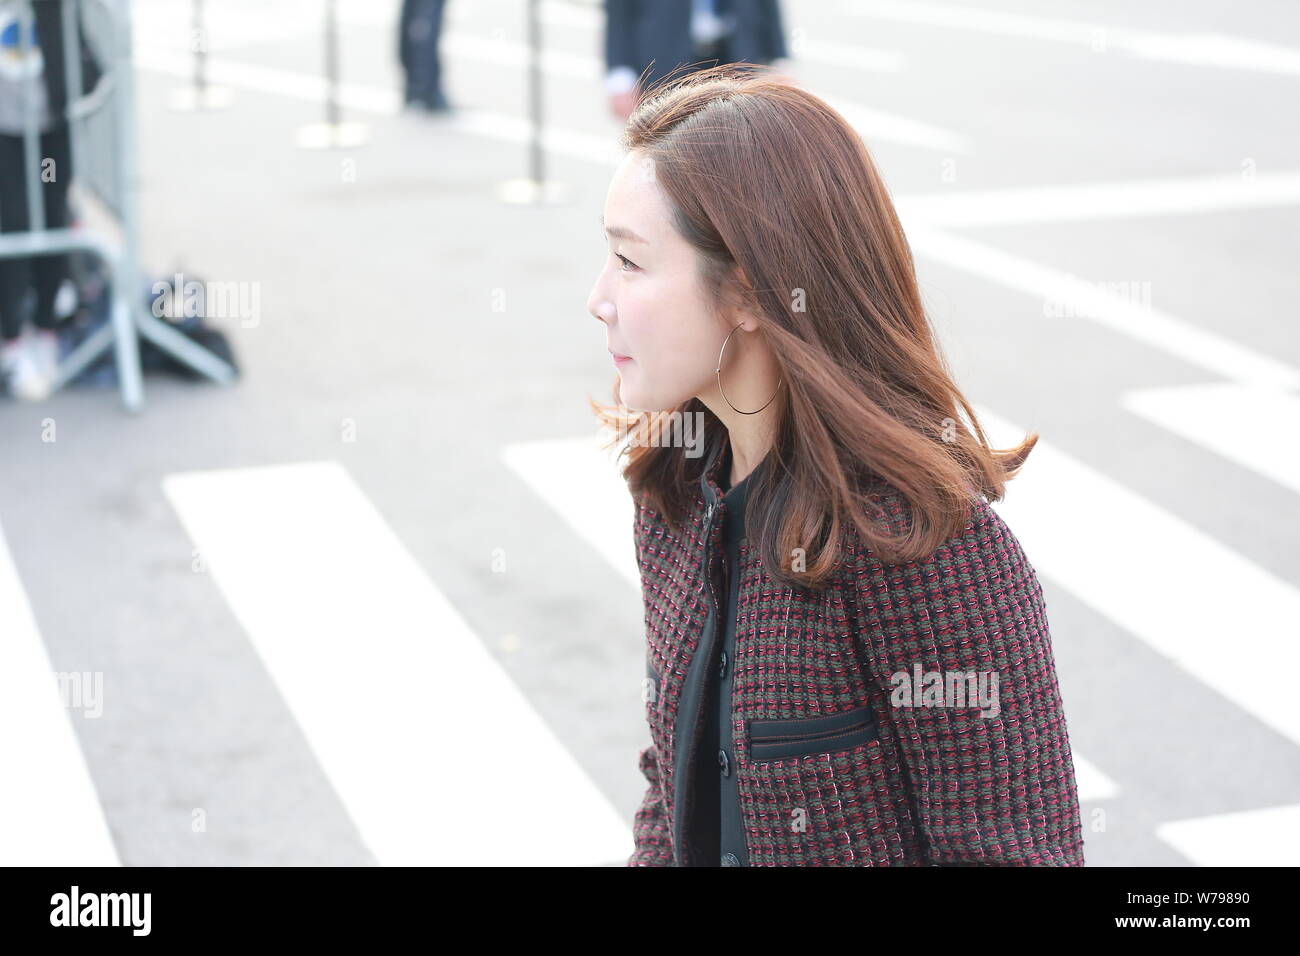 L'actrice sud-coréenne Choi Ji-woo arrive pour la cérémonie de mariage de l'actrice Song Hye-kyo et l'acteur Song Joong-ki à Séoul, Corée du Sud, 31 octobre 20 Banque D'Images